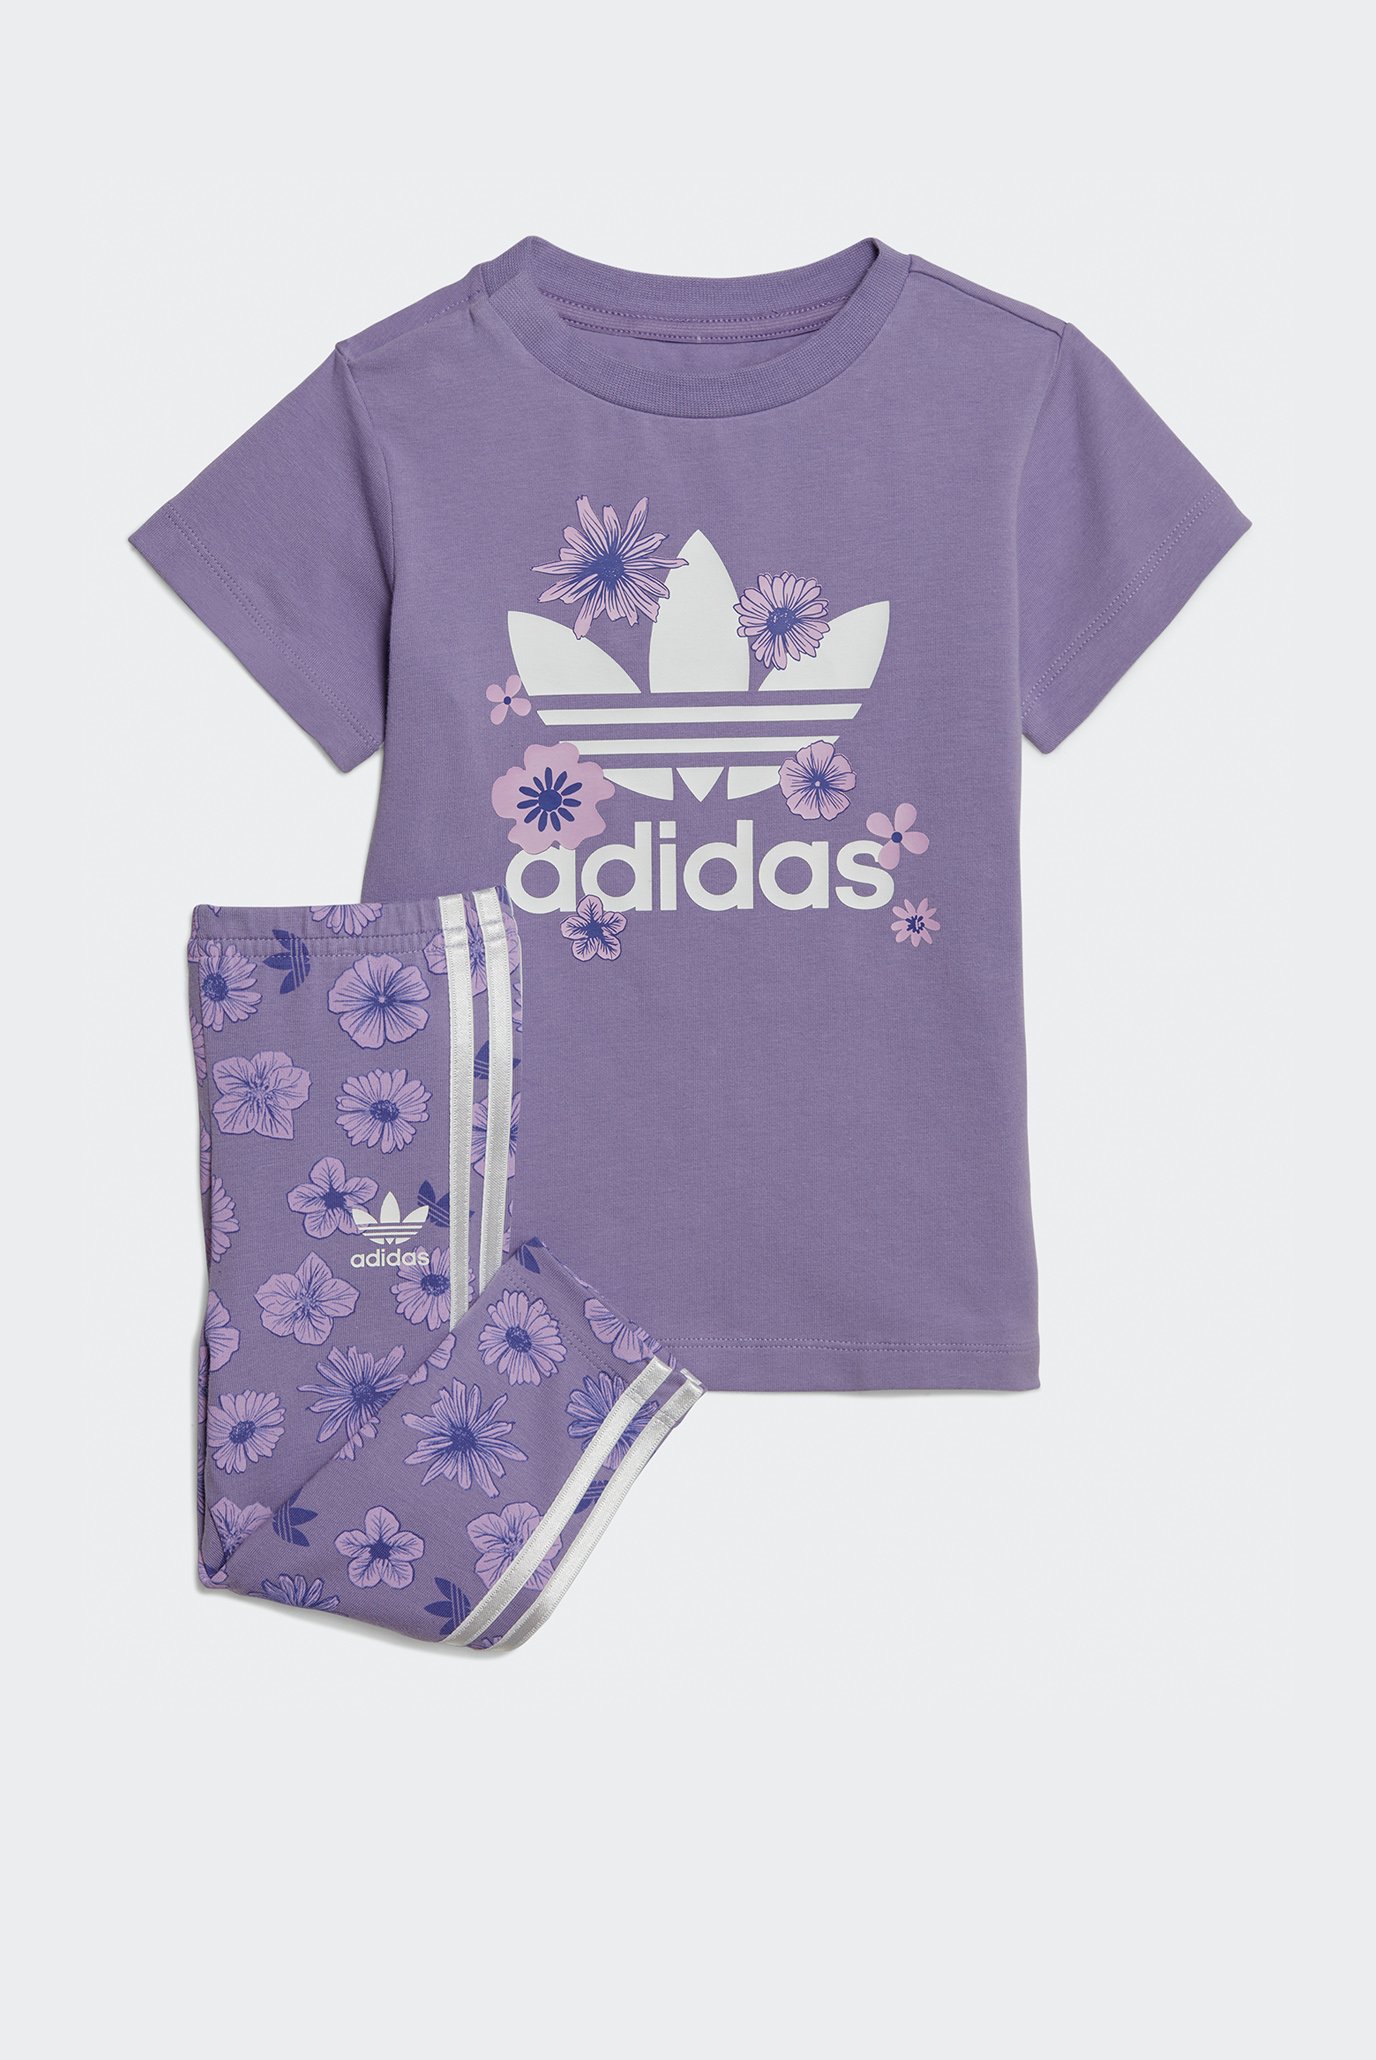 Детский фиолетовый комплект одежды (футболка, леггинсы) футболка и леггинсы Floral 1